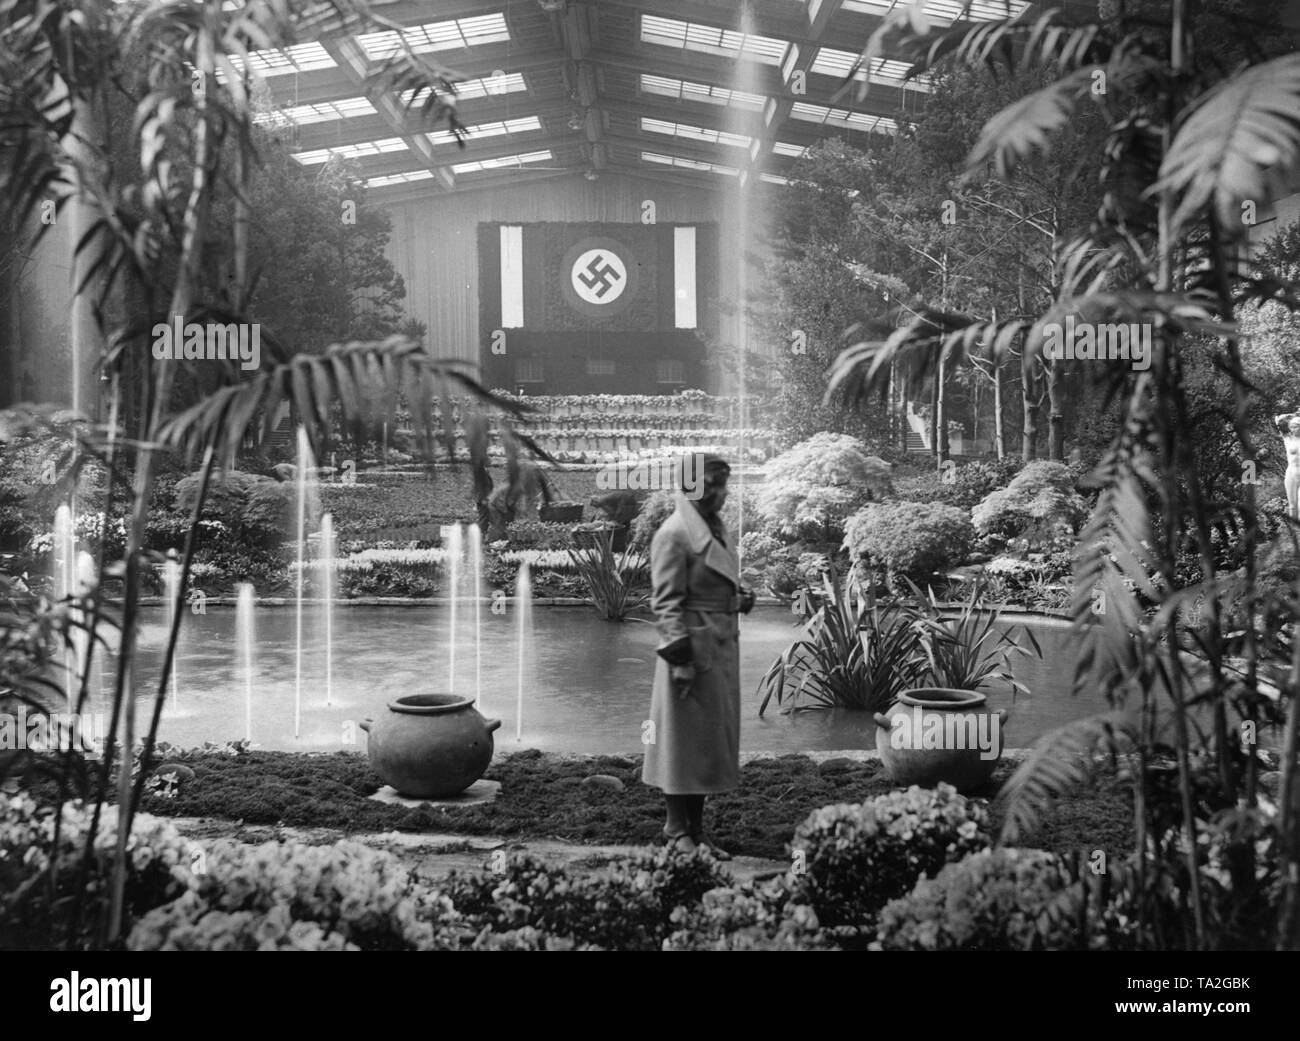 Un grand drapeau à croix gammée lors d'une exposition horticole, 1933. Banque D'Images